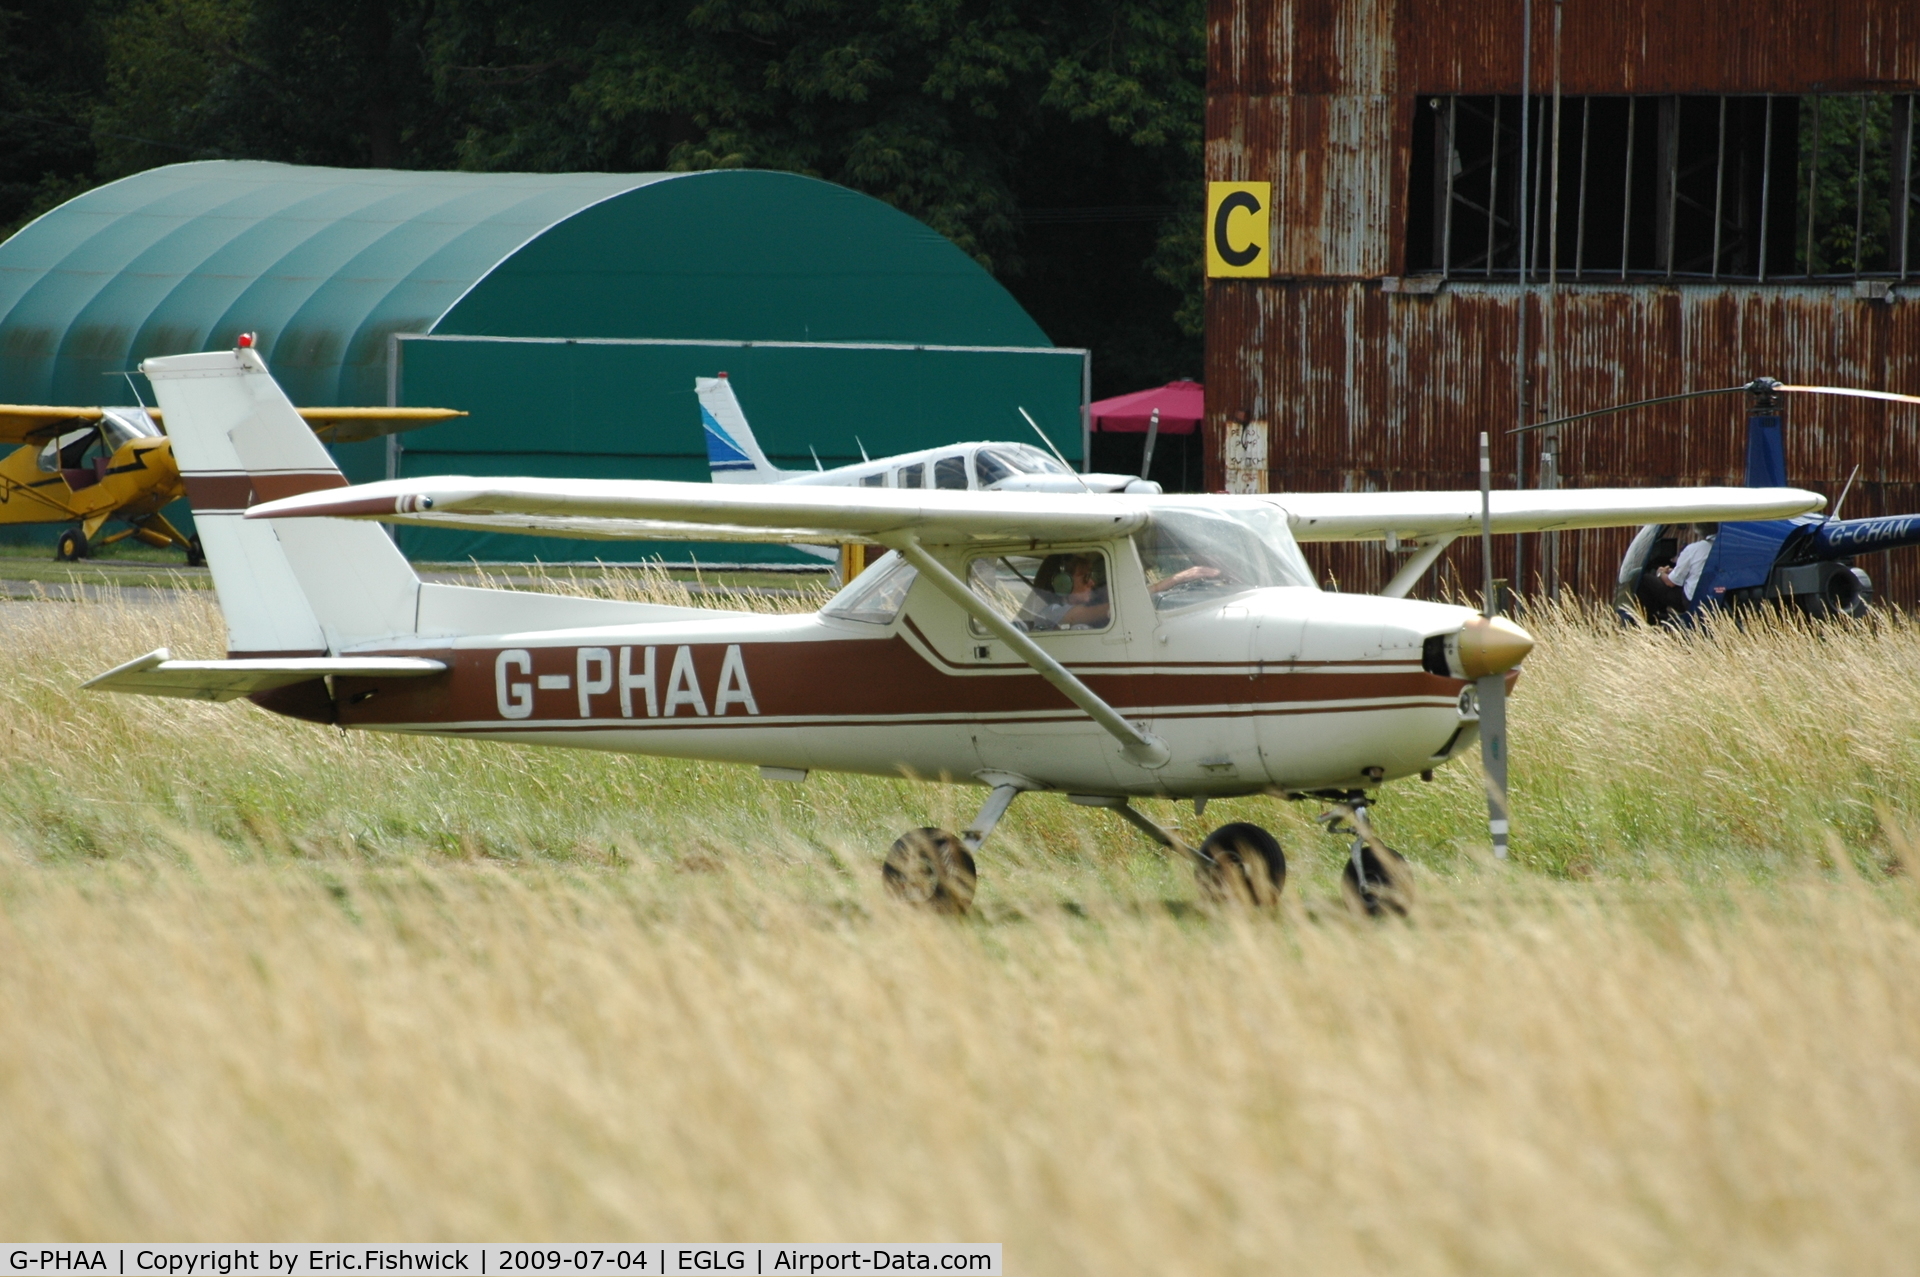 G-PHAA, 1974 Reims F150M C/N 1159, G-PHAA at Panshanger Airfield